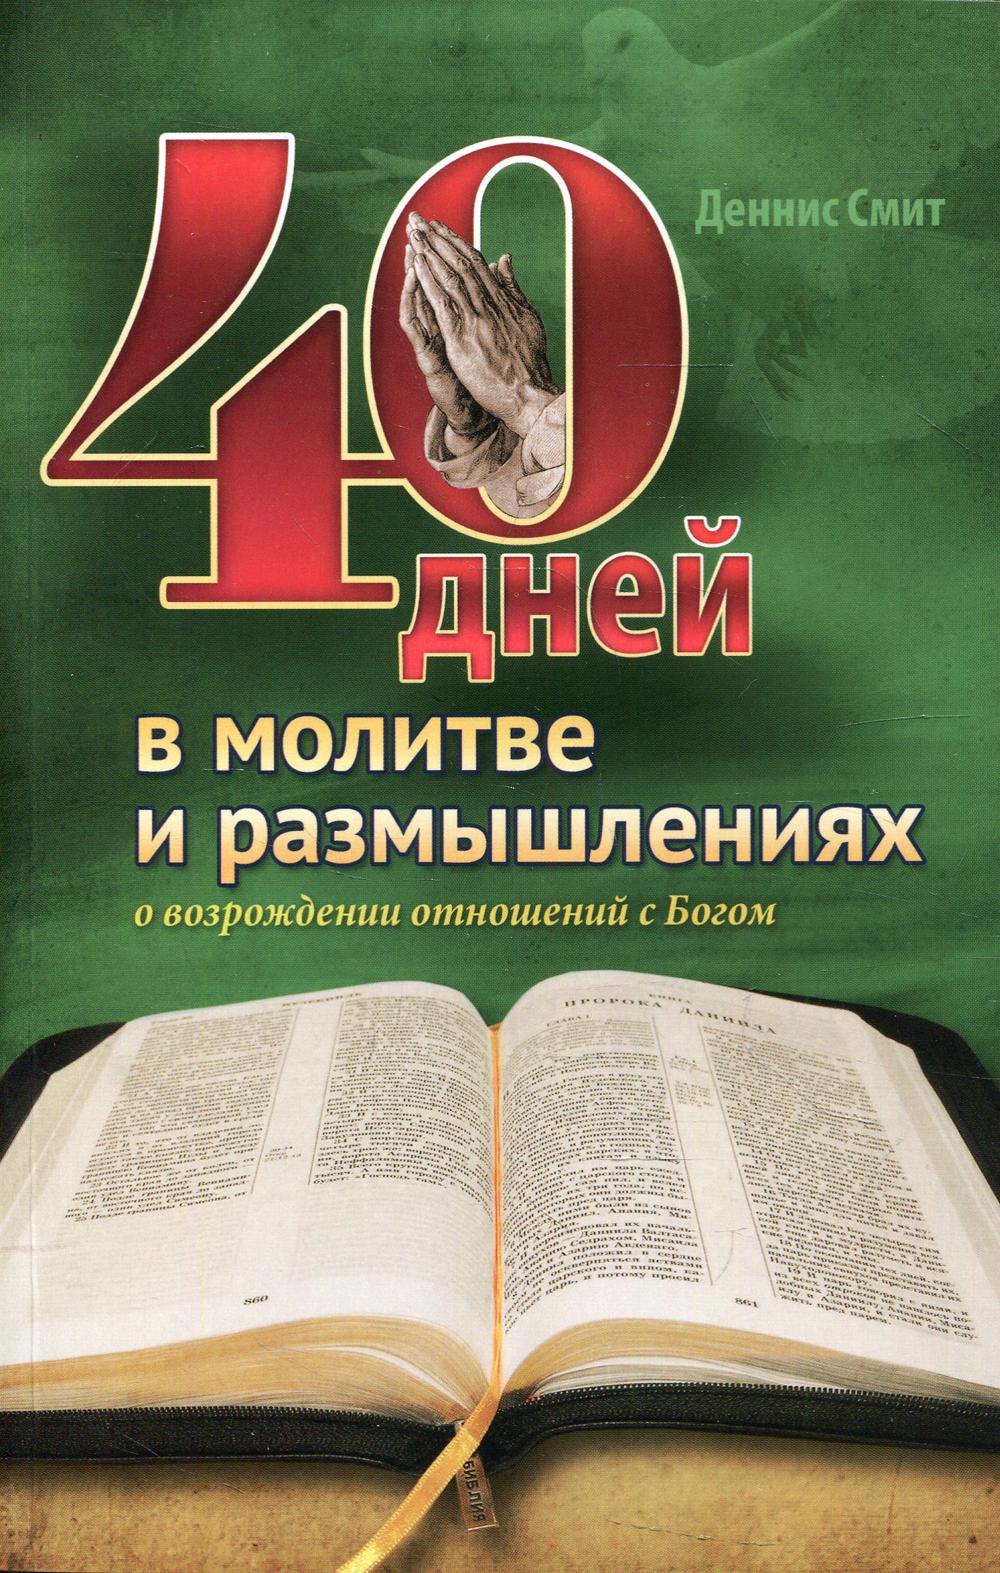 фото Книга 40 дней в молитве и размышлениях о возрождении отношений с богом источник жизни